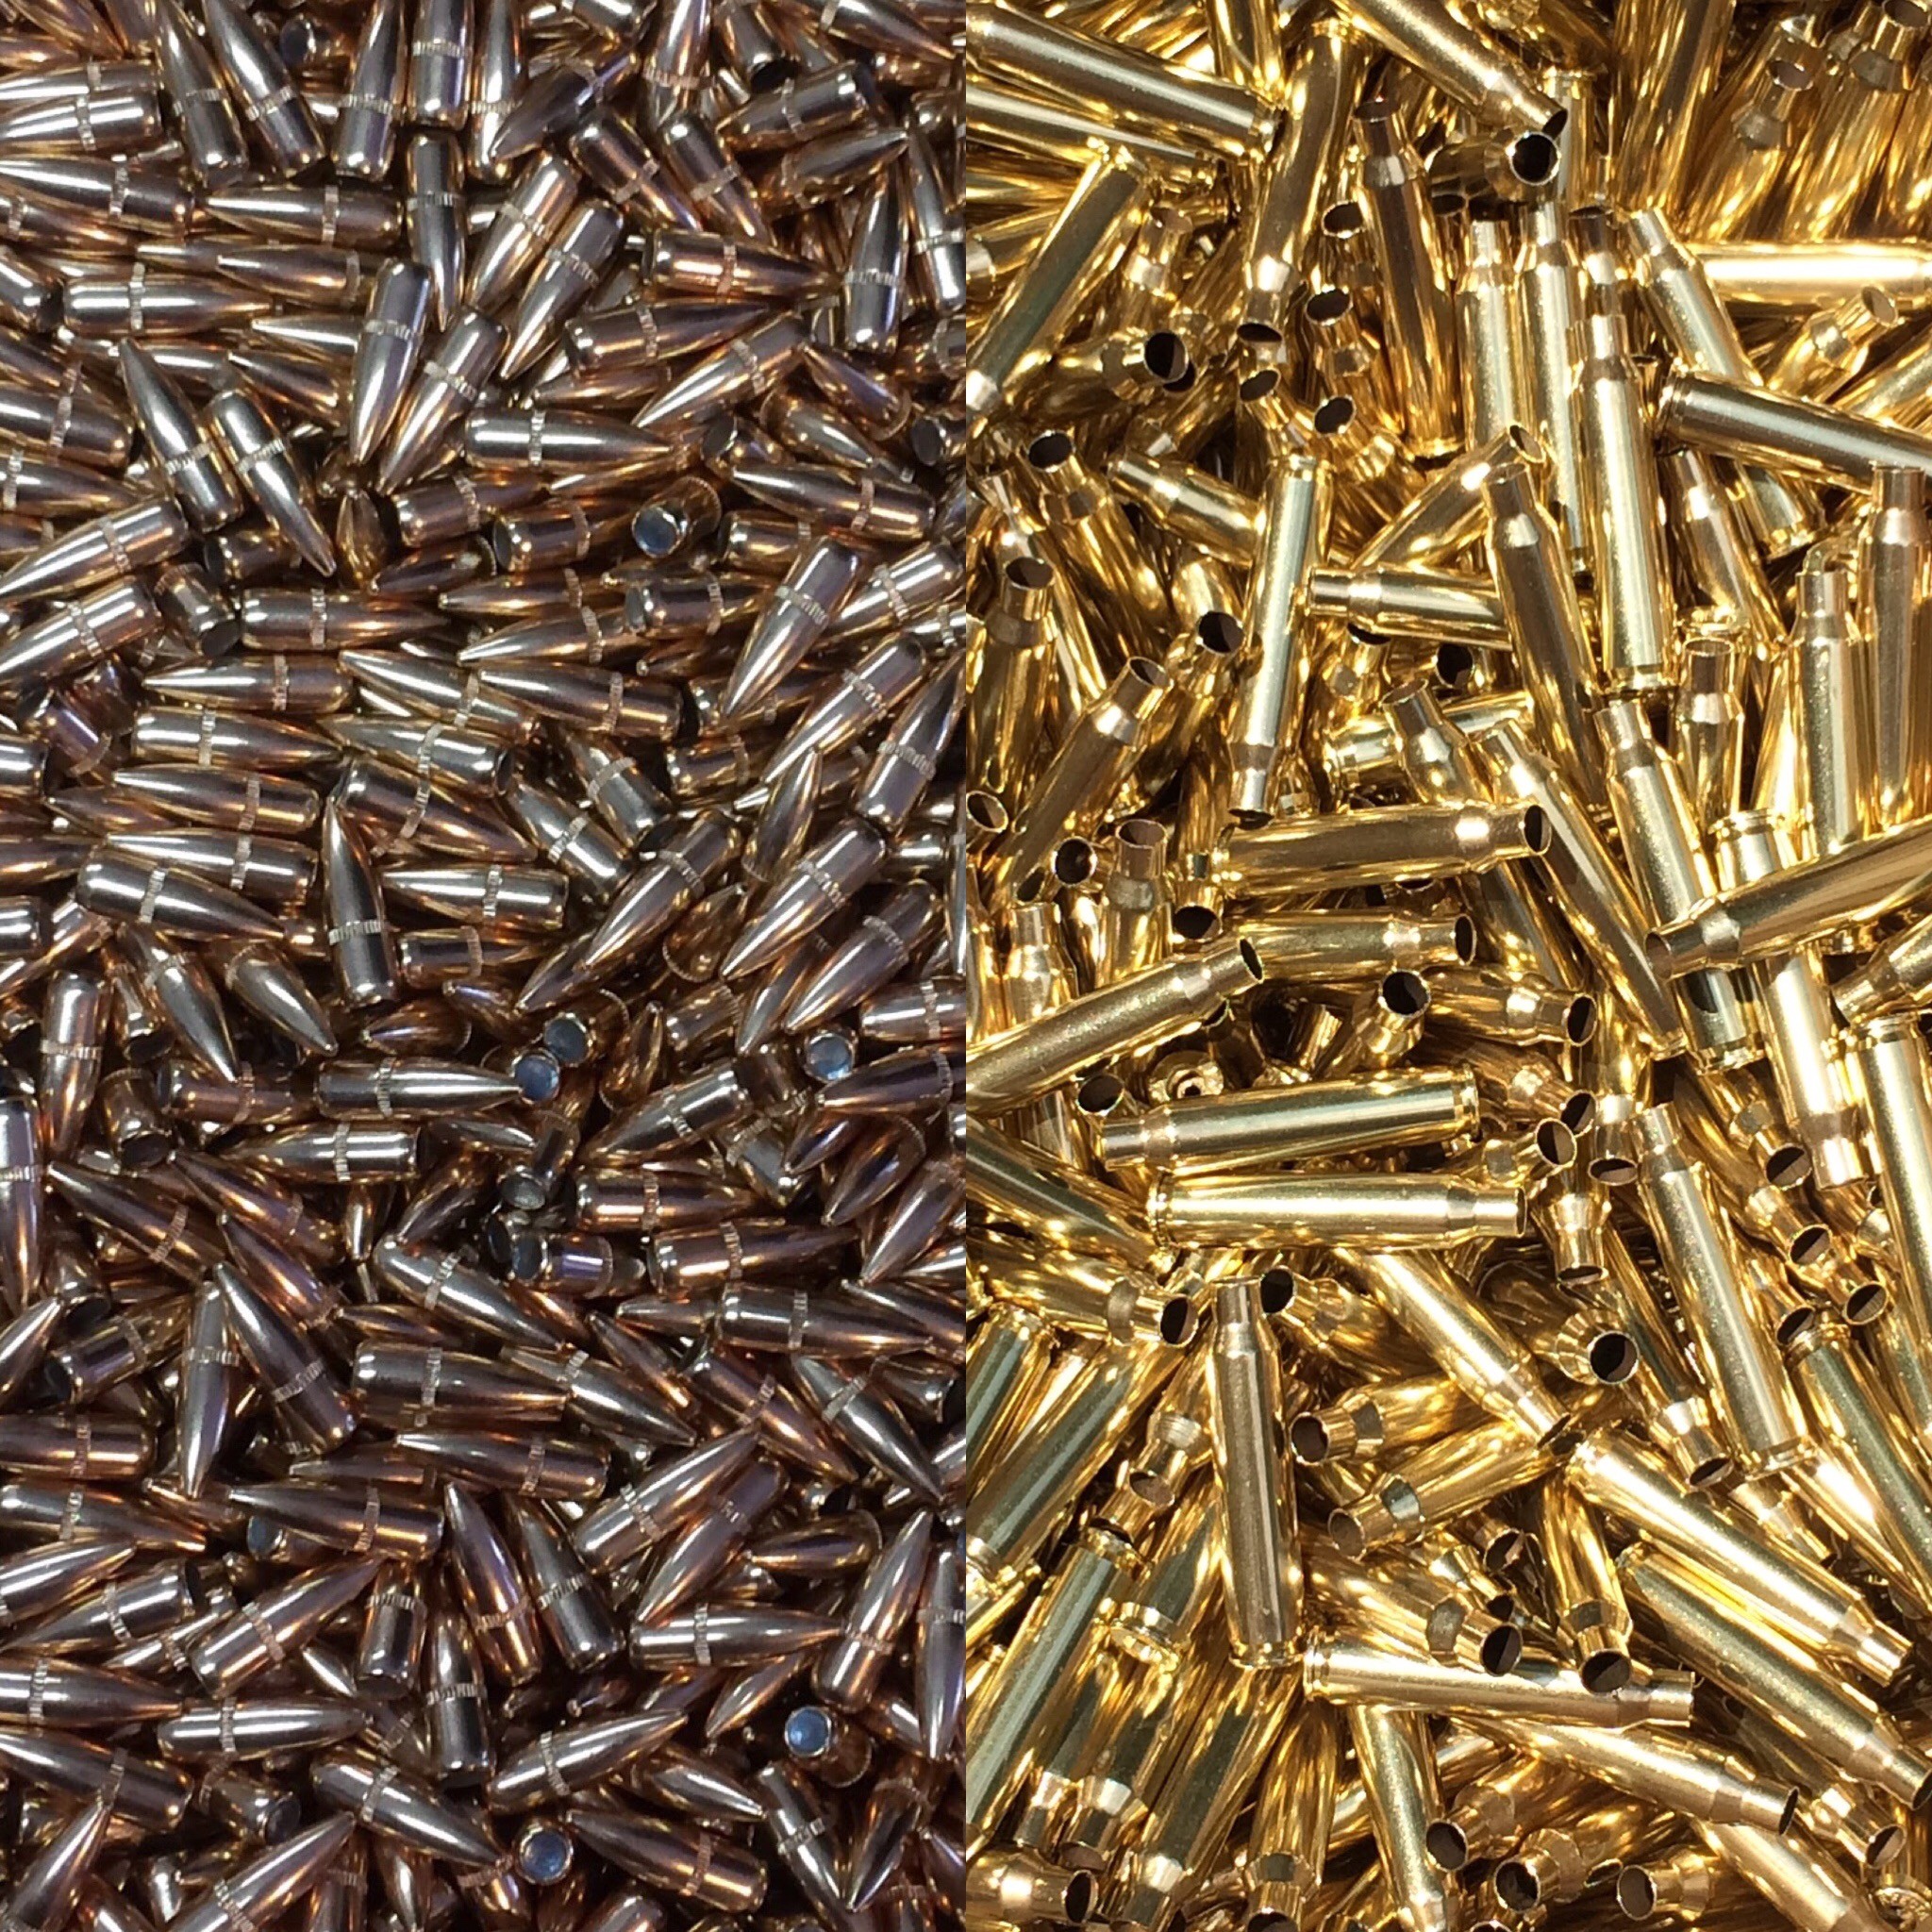 223/5.56 brass and bullets- Hornady Bullets Blue Ridge Brass